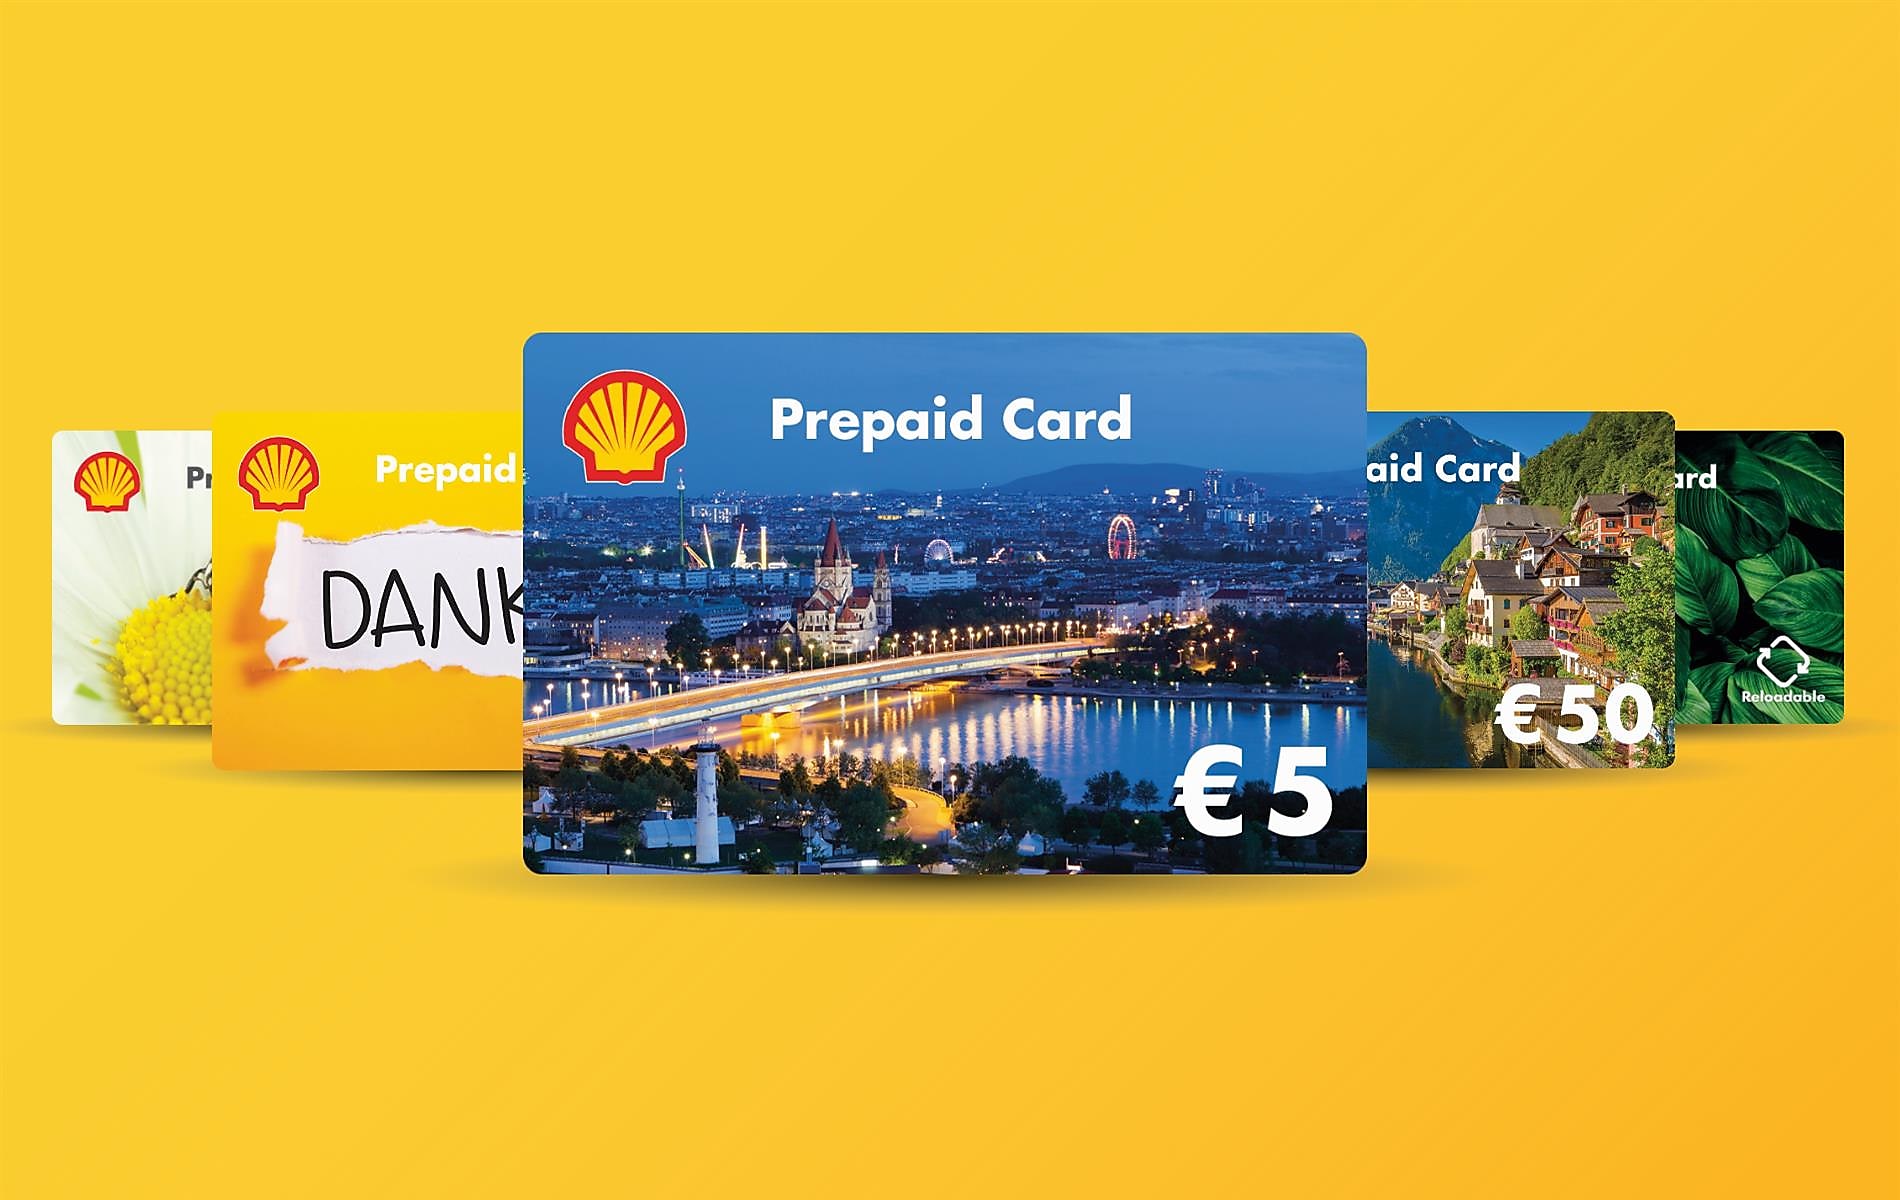 Shell Prepaid Card: Online & direkt bei Shell